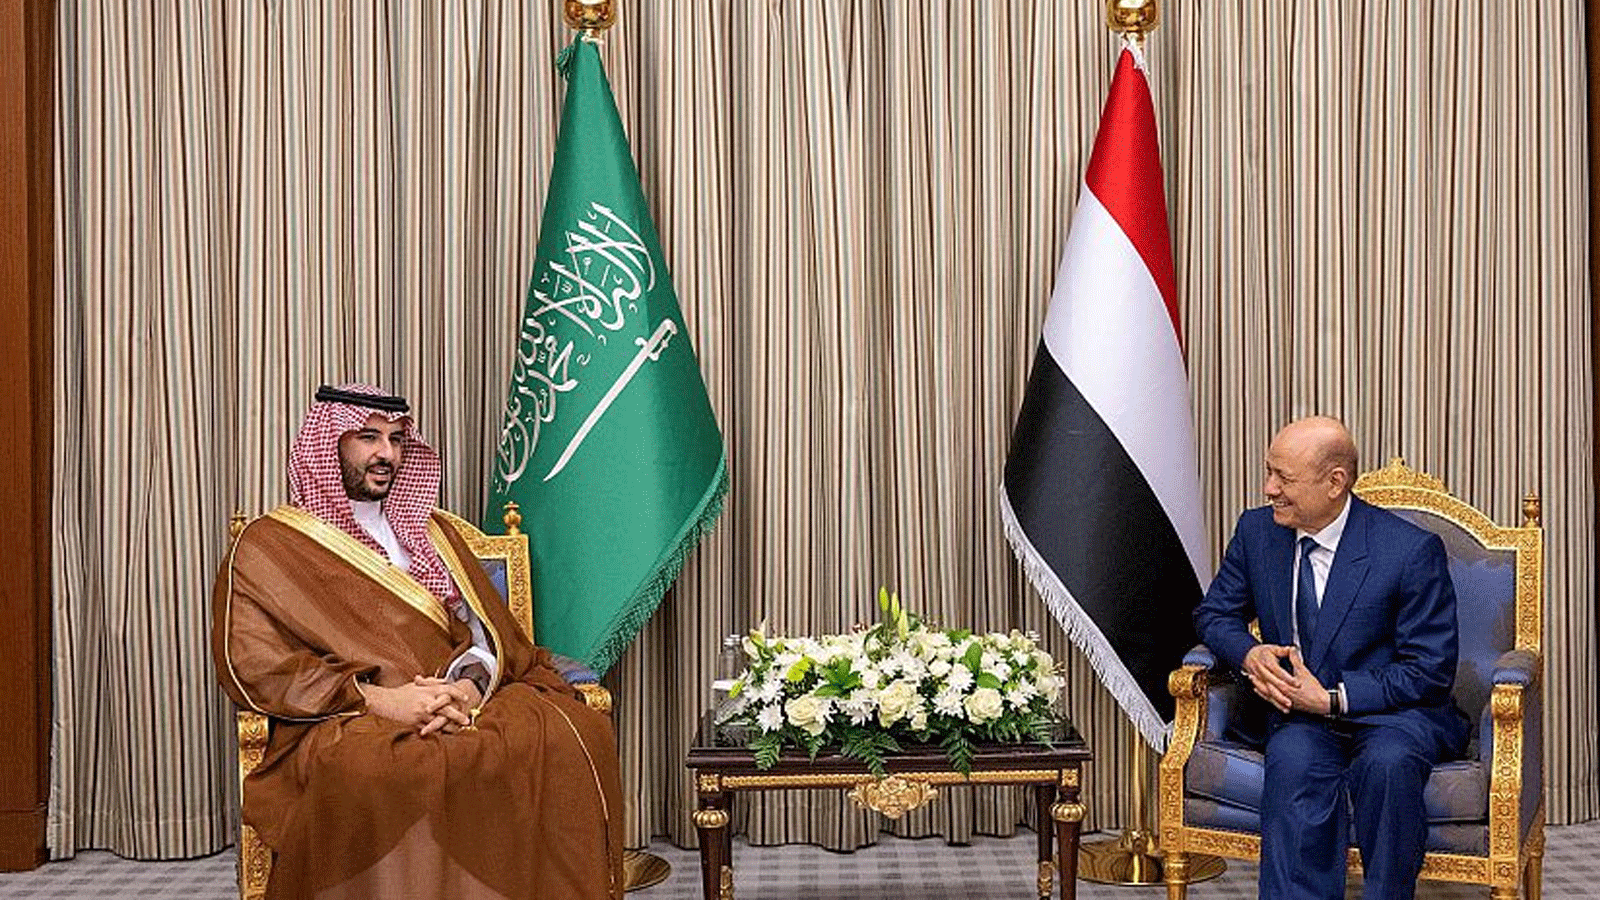 صورة من اللقاء الذي جمع الأمير خالد بن سلمان، وزير الدفاع السعودي، مع رئيس مجلس القيادة الرئاسي بالجمهورية اليمنية الدكتور رشاد العليمي(واس)